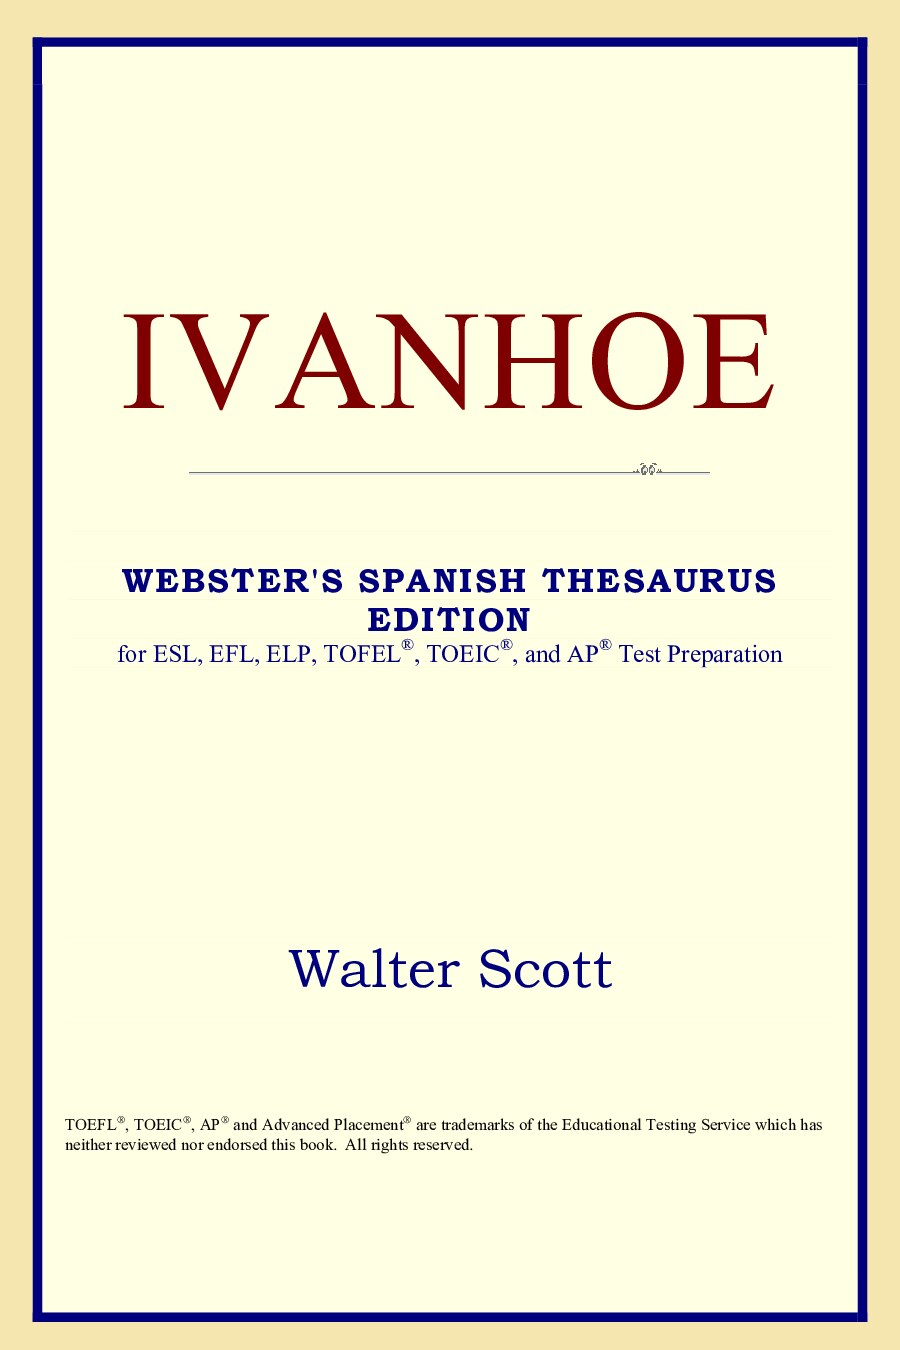 Sir Walter Scott - Ivanhoe (2)